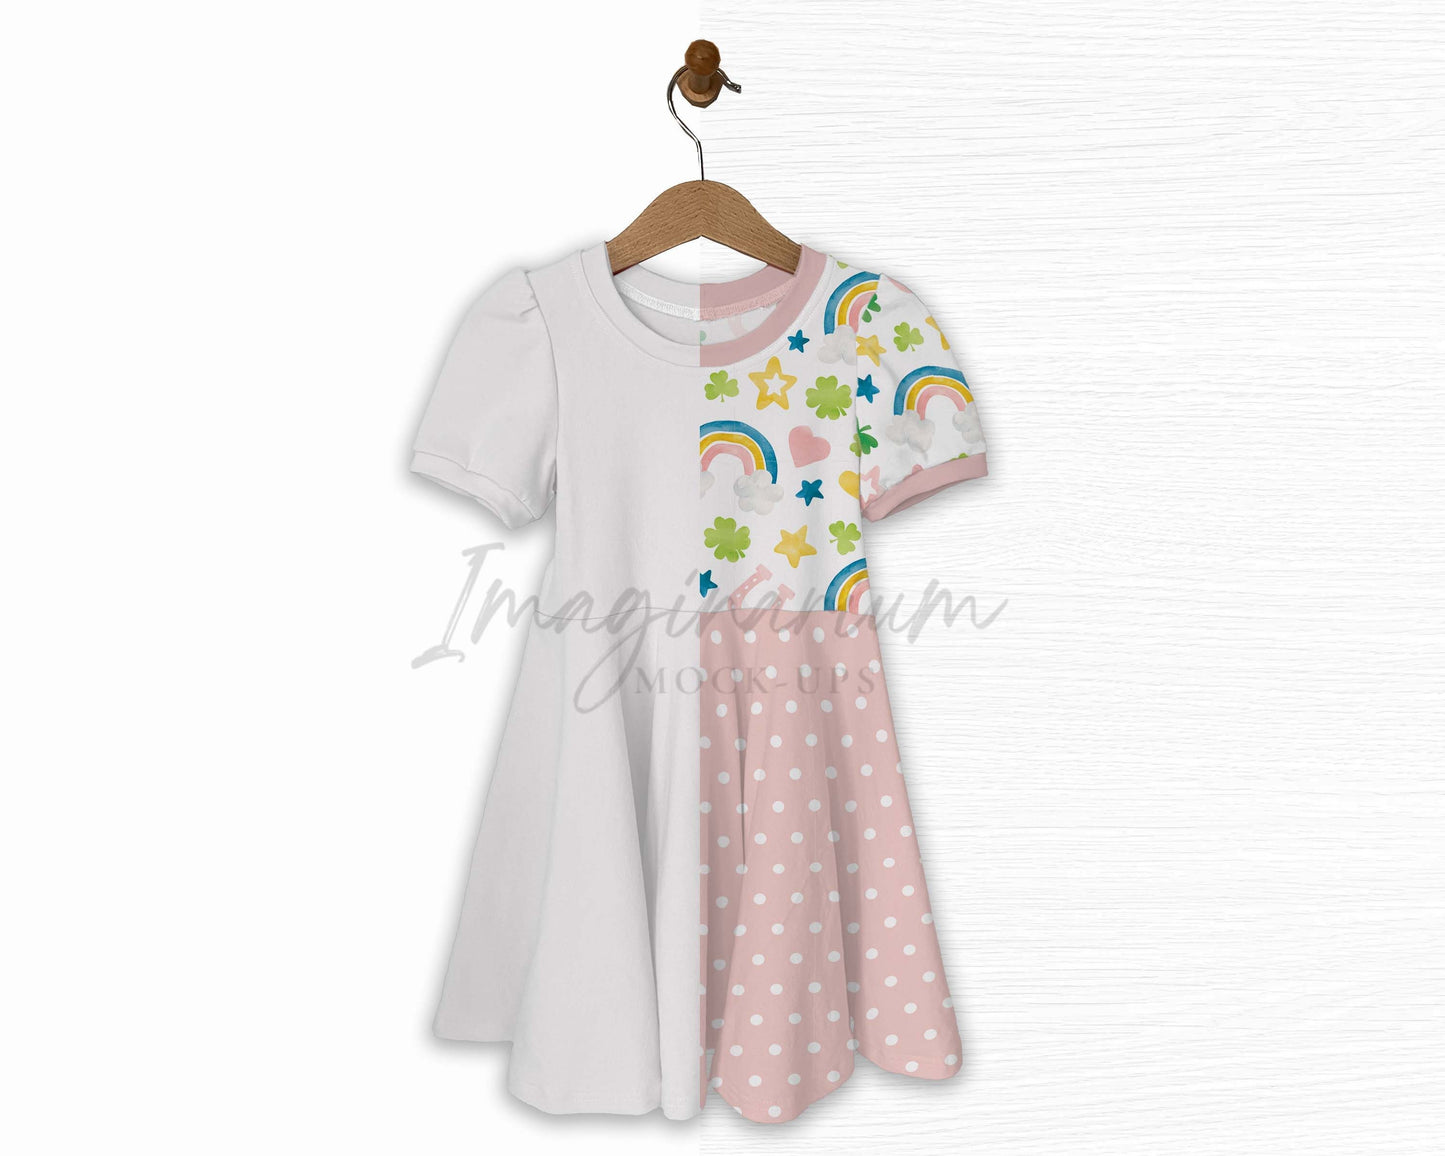 Short Sleeve Circle Skirt Melanie Dress Mock Up, Realistic Clothing Mockup for Photoshop and Procreate